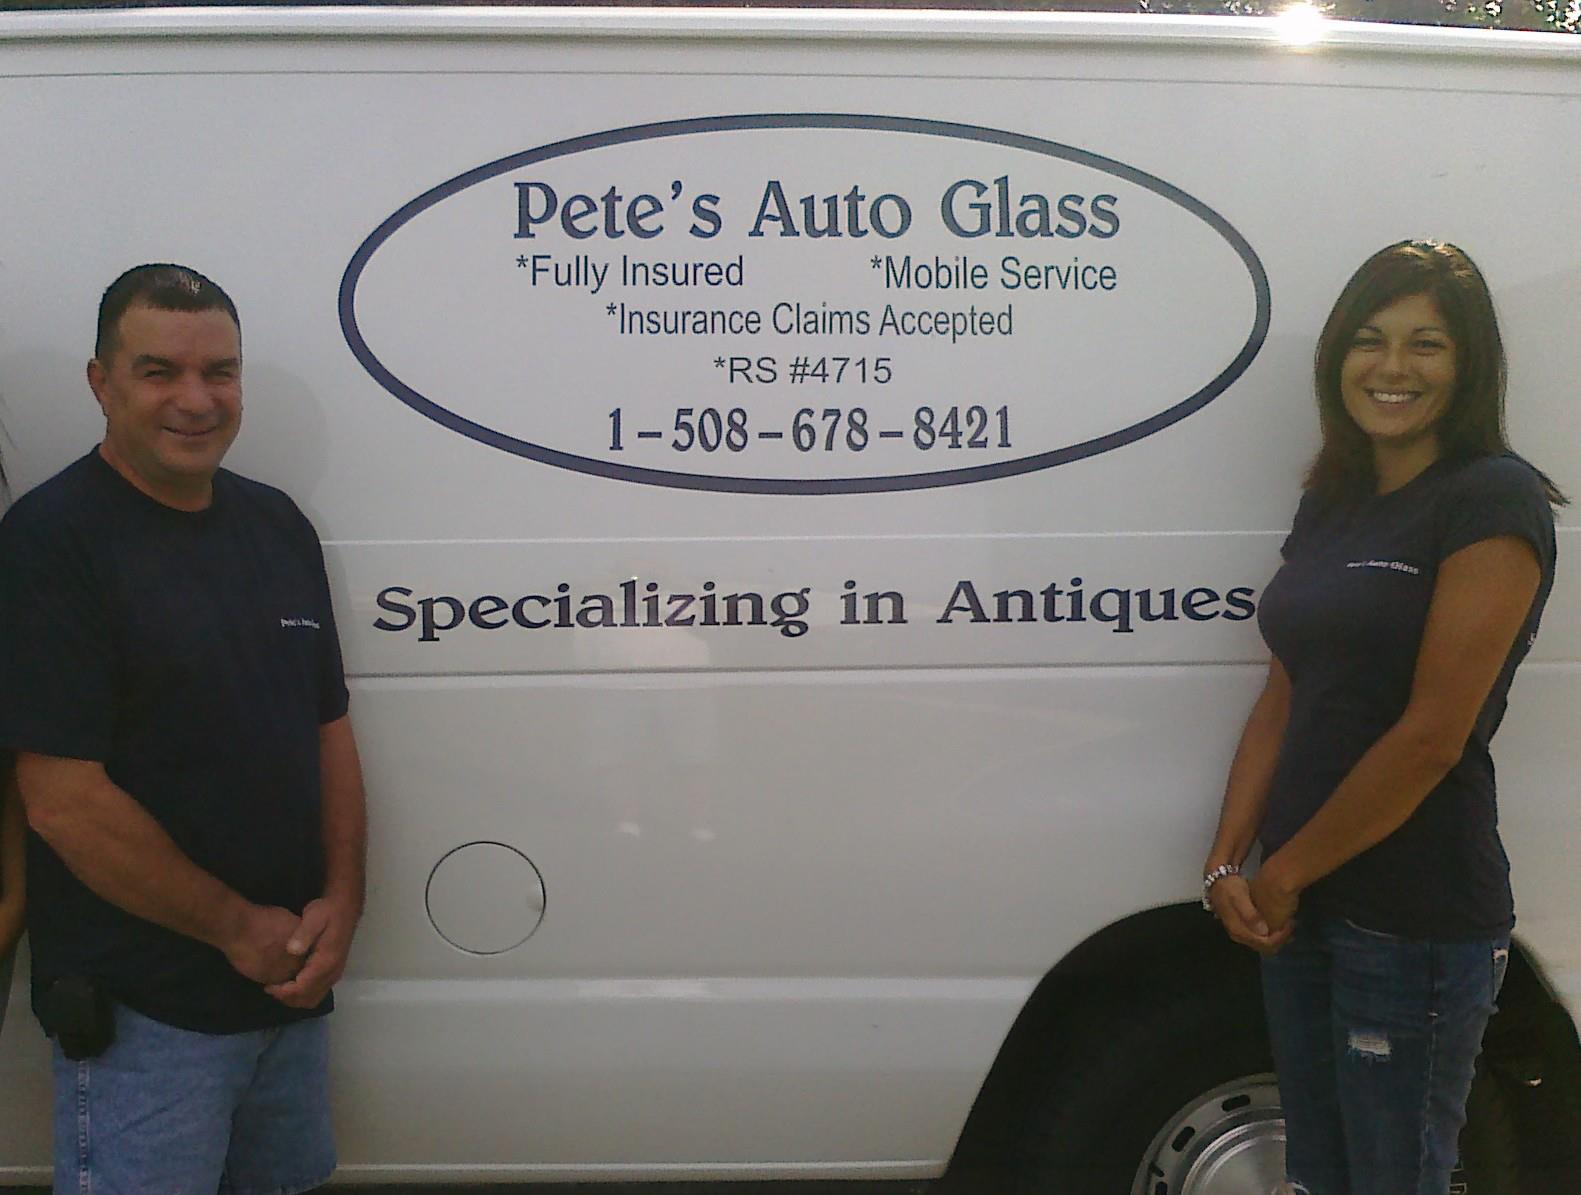 Pete's Auto glass